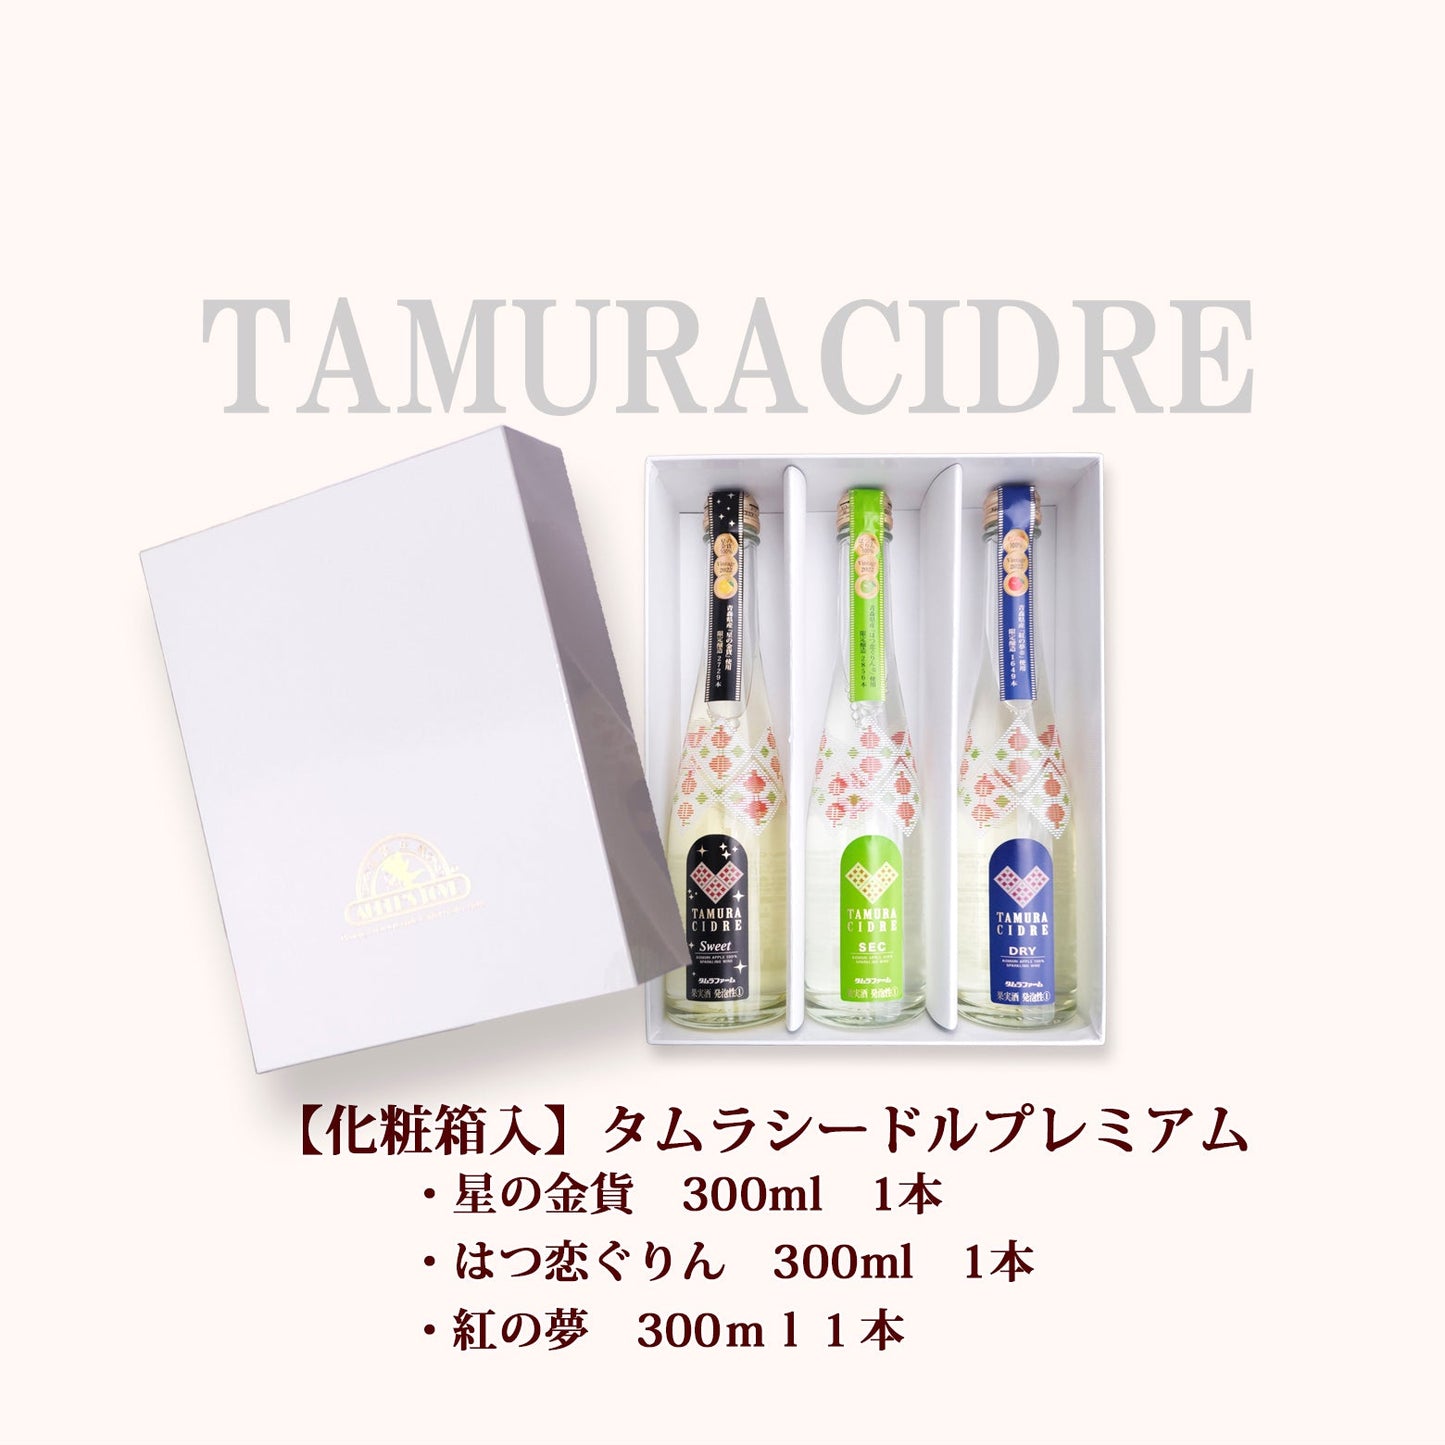 タムラプレミアムシードル 300ml【送料別】【タムラファーム】【新発売】